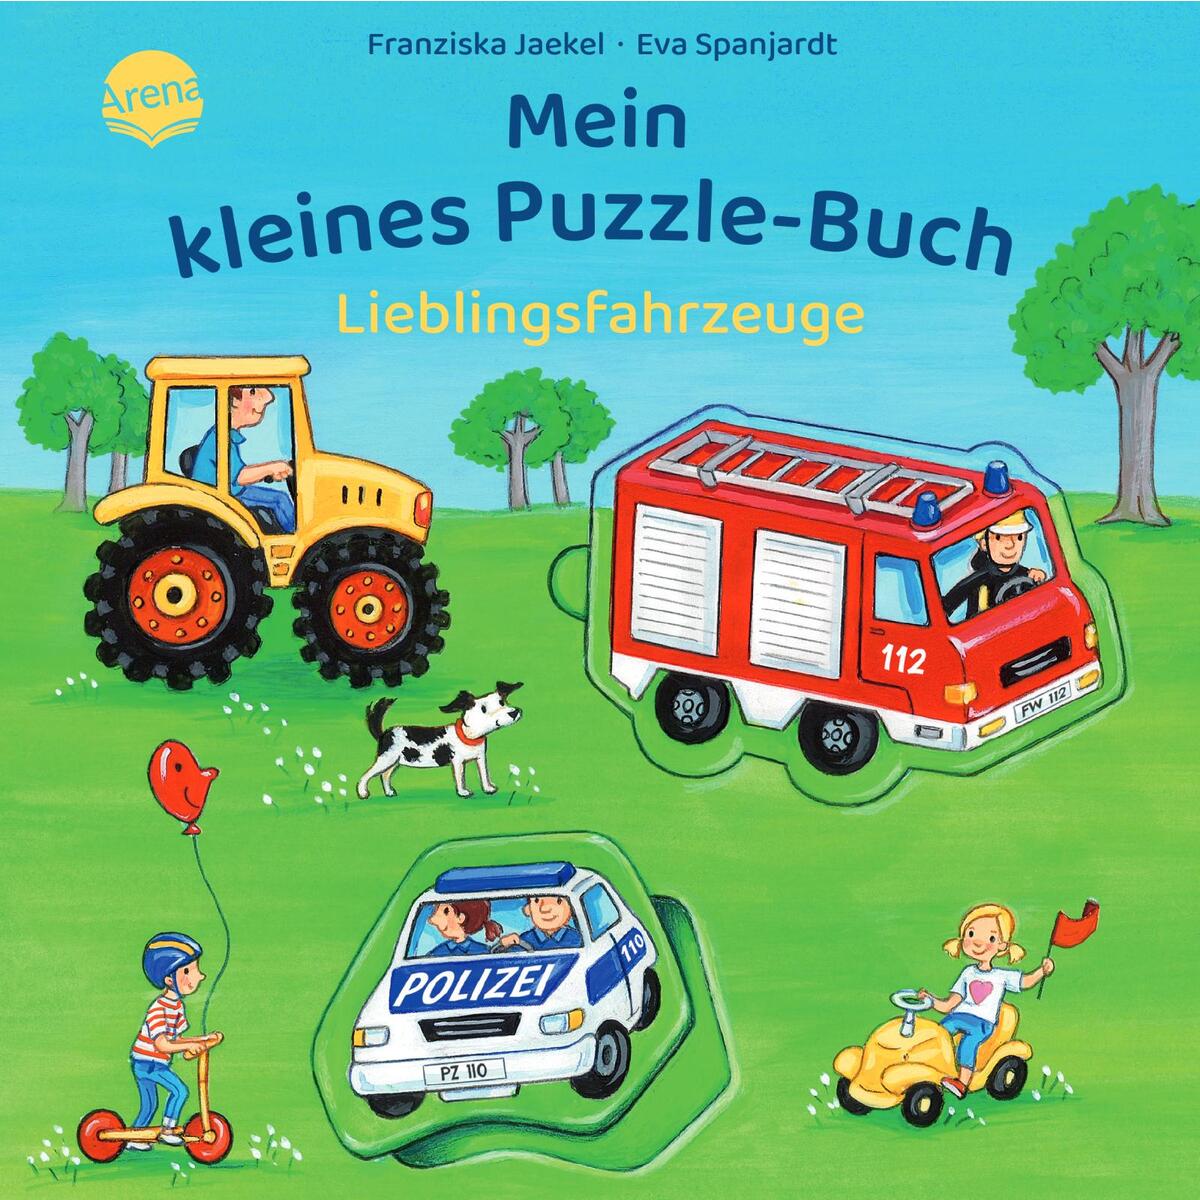 Mein kleines Puzzle-Buch. Lieblingsfahrzeuge von Arena Verlag GmbH